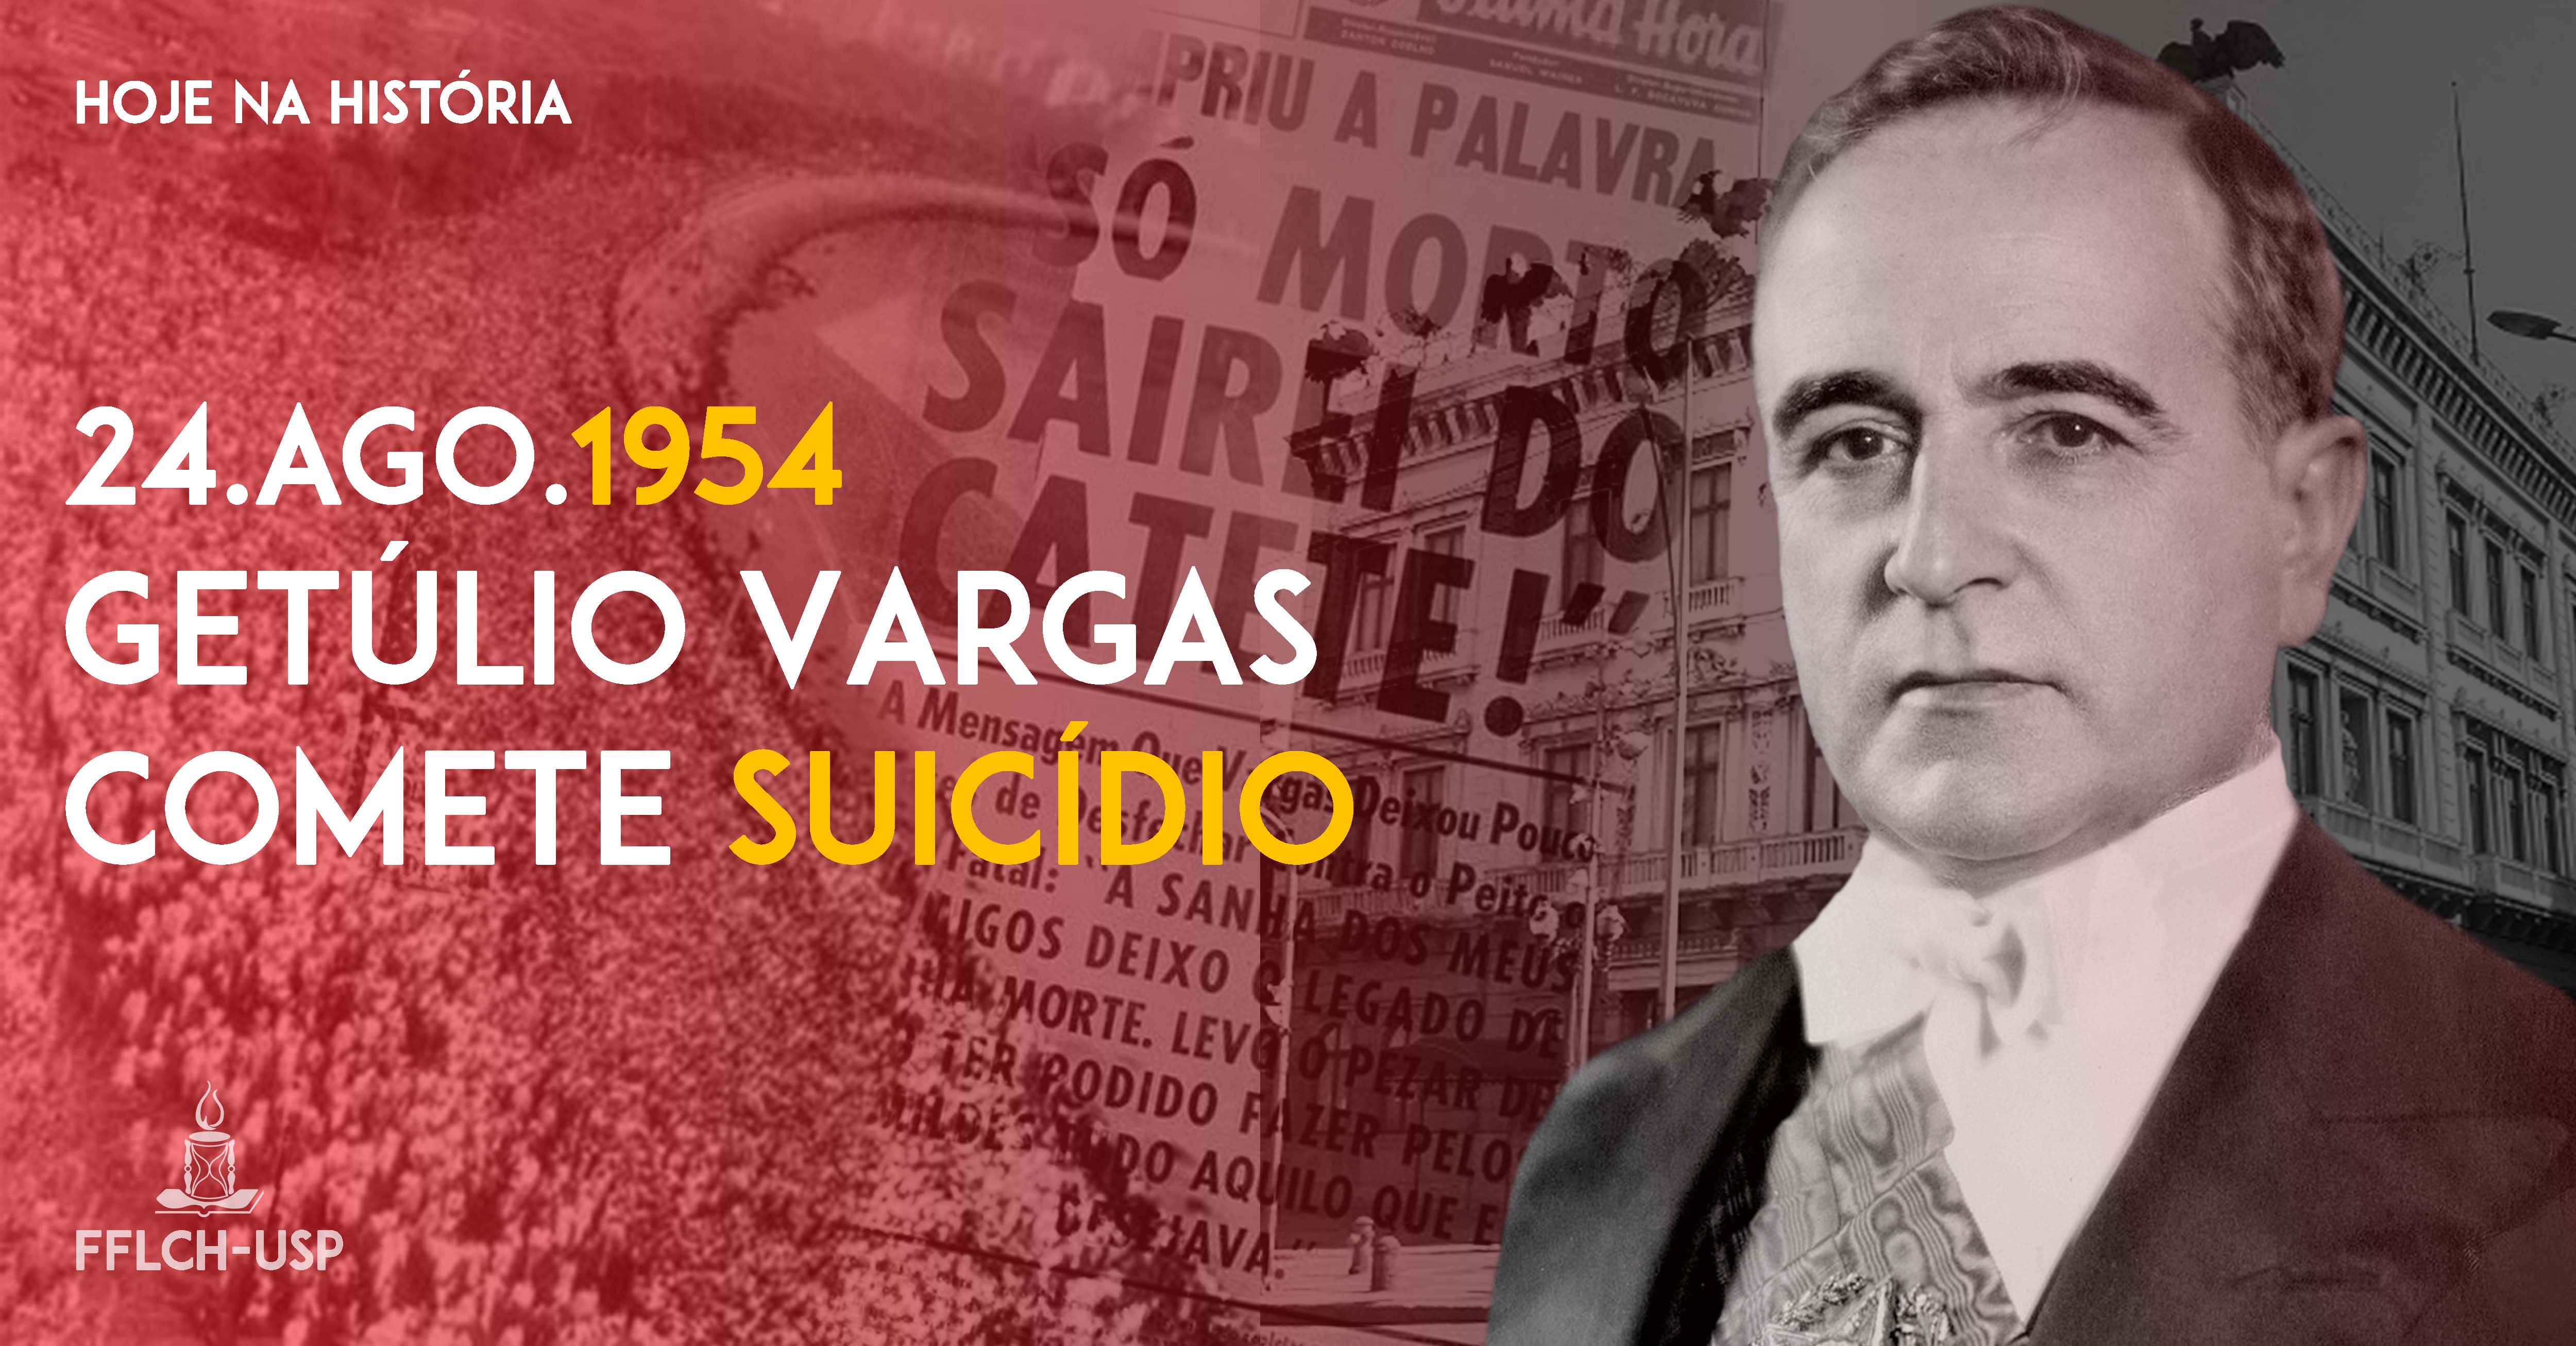 Getúlio Vargas comete suicídio